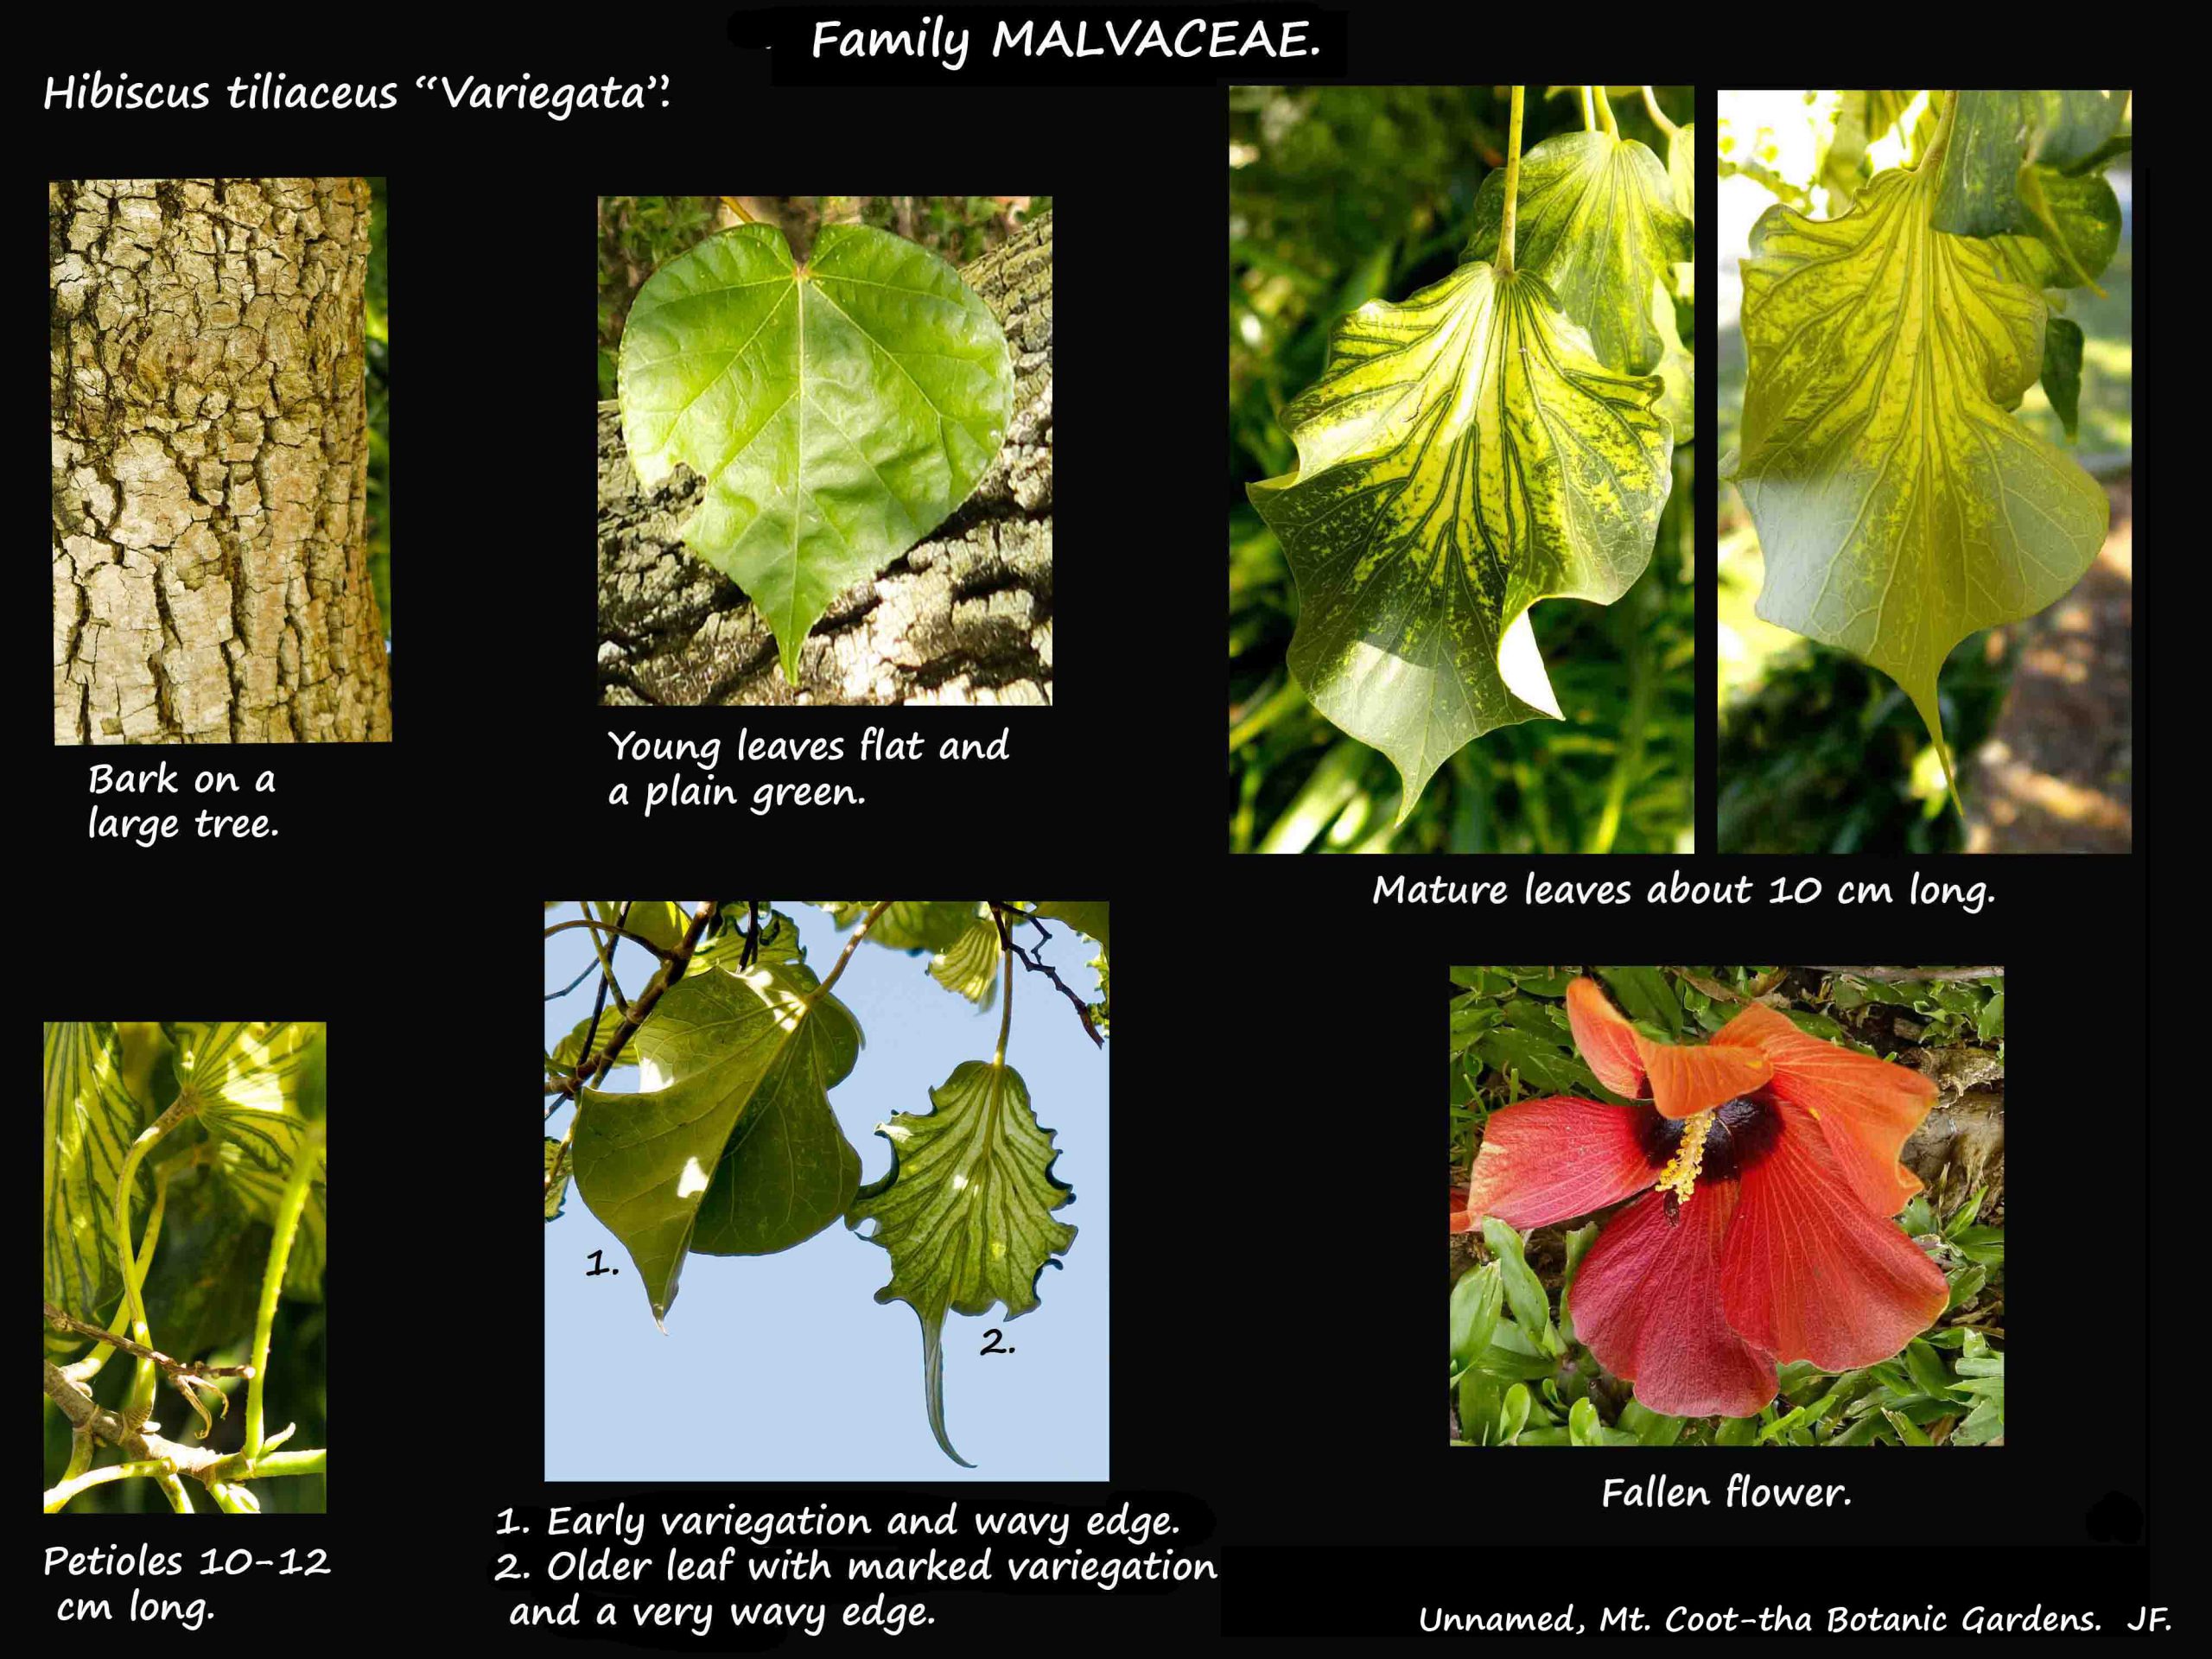 11 Hibiscus tiliaceus 'Variegata'